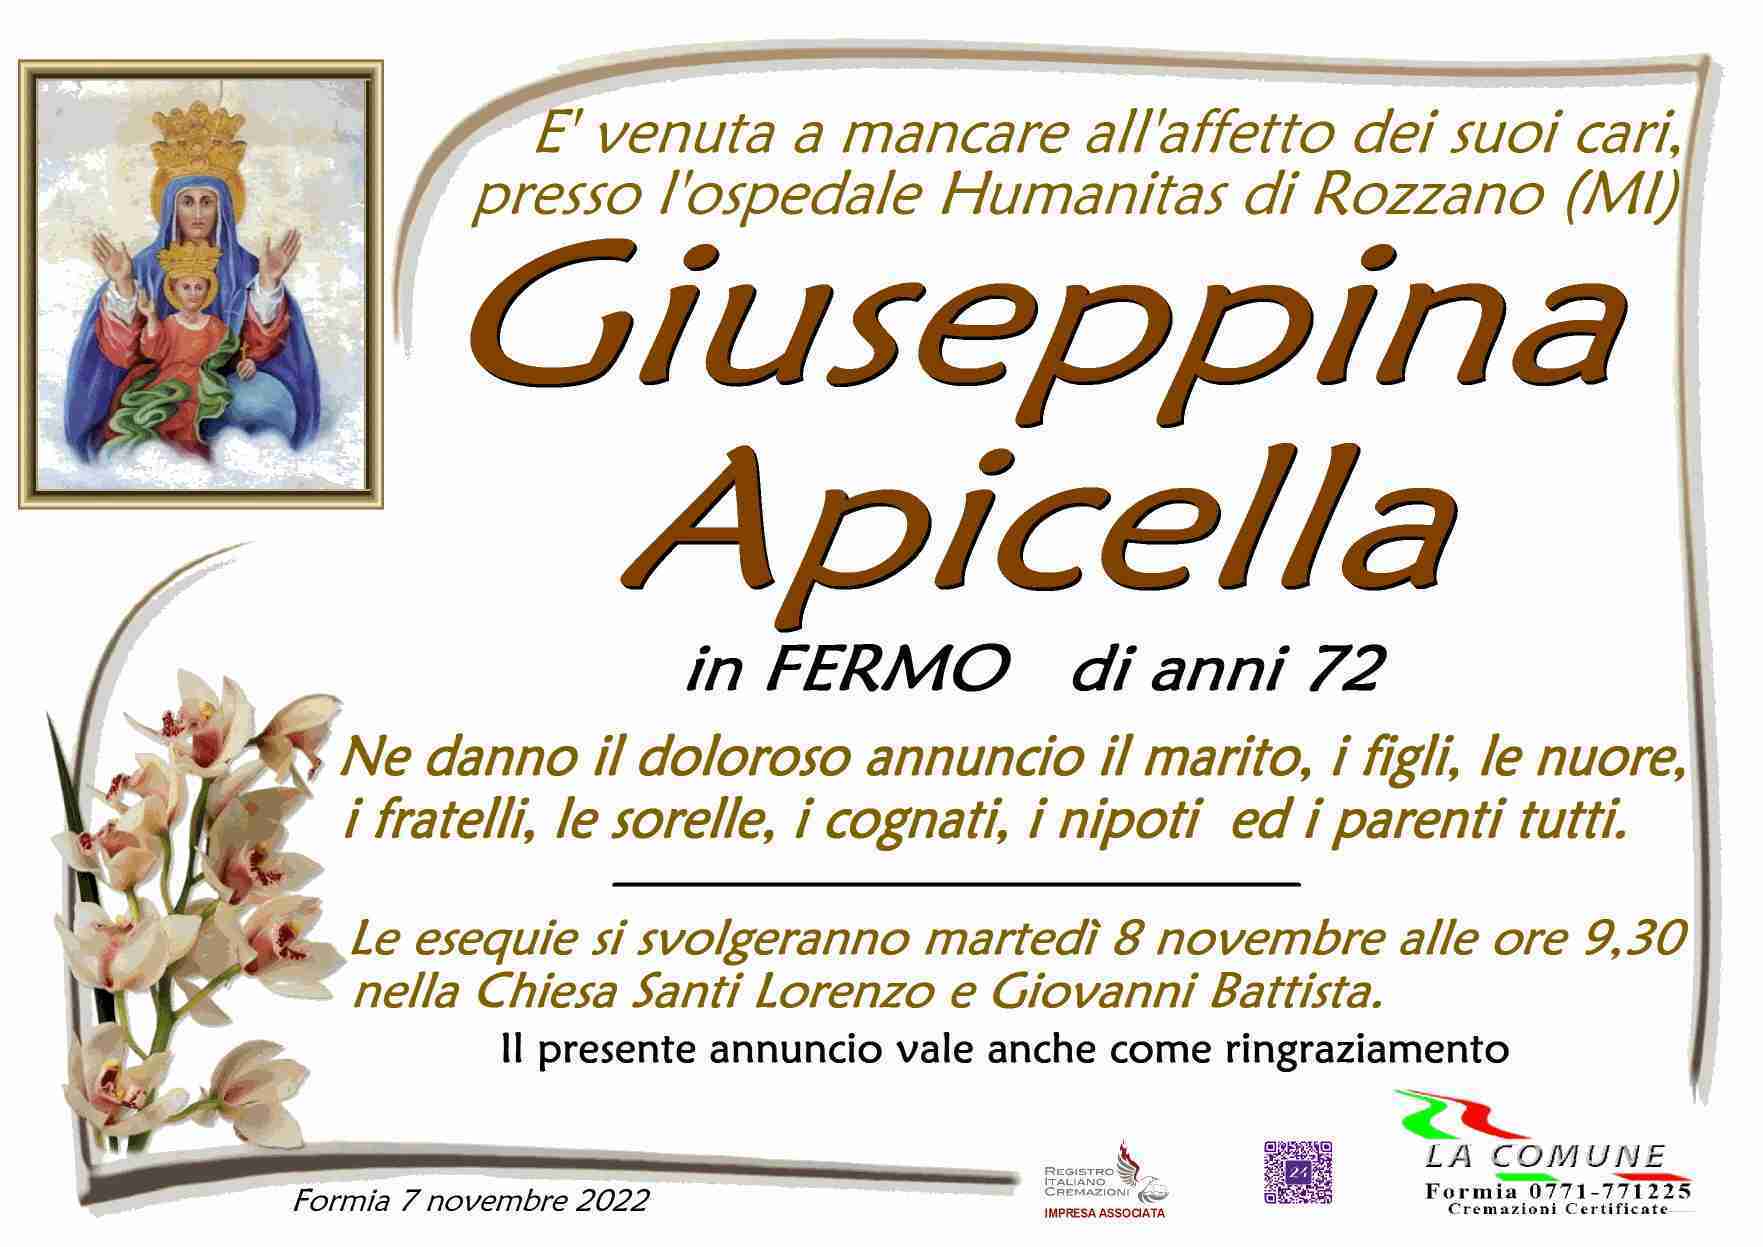 Giuseppina Apicella